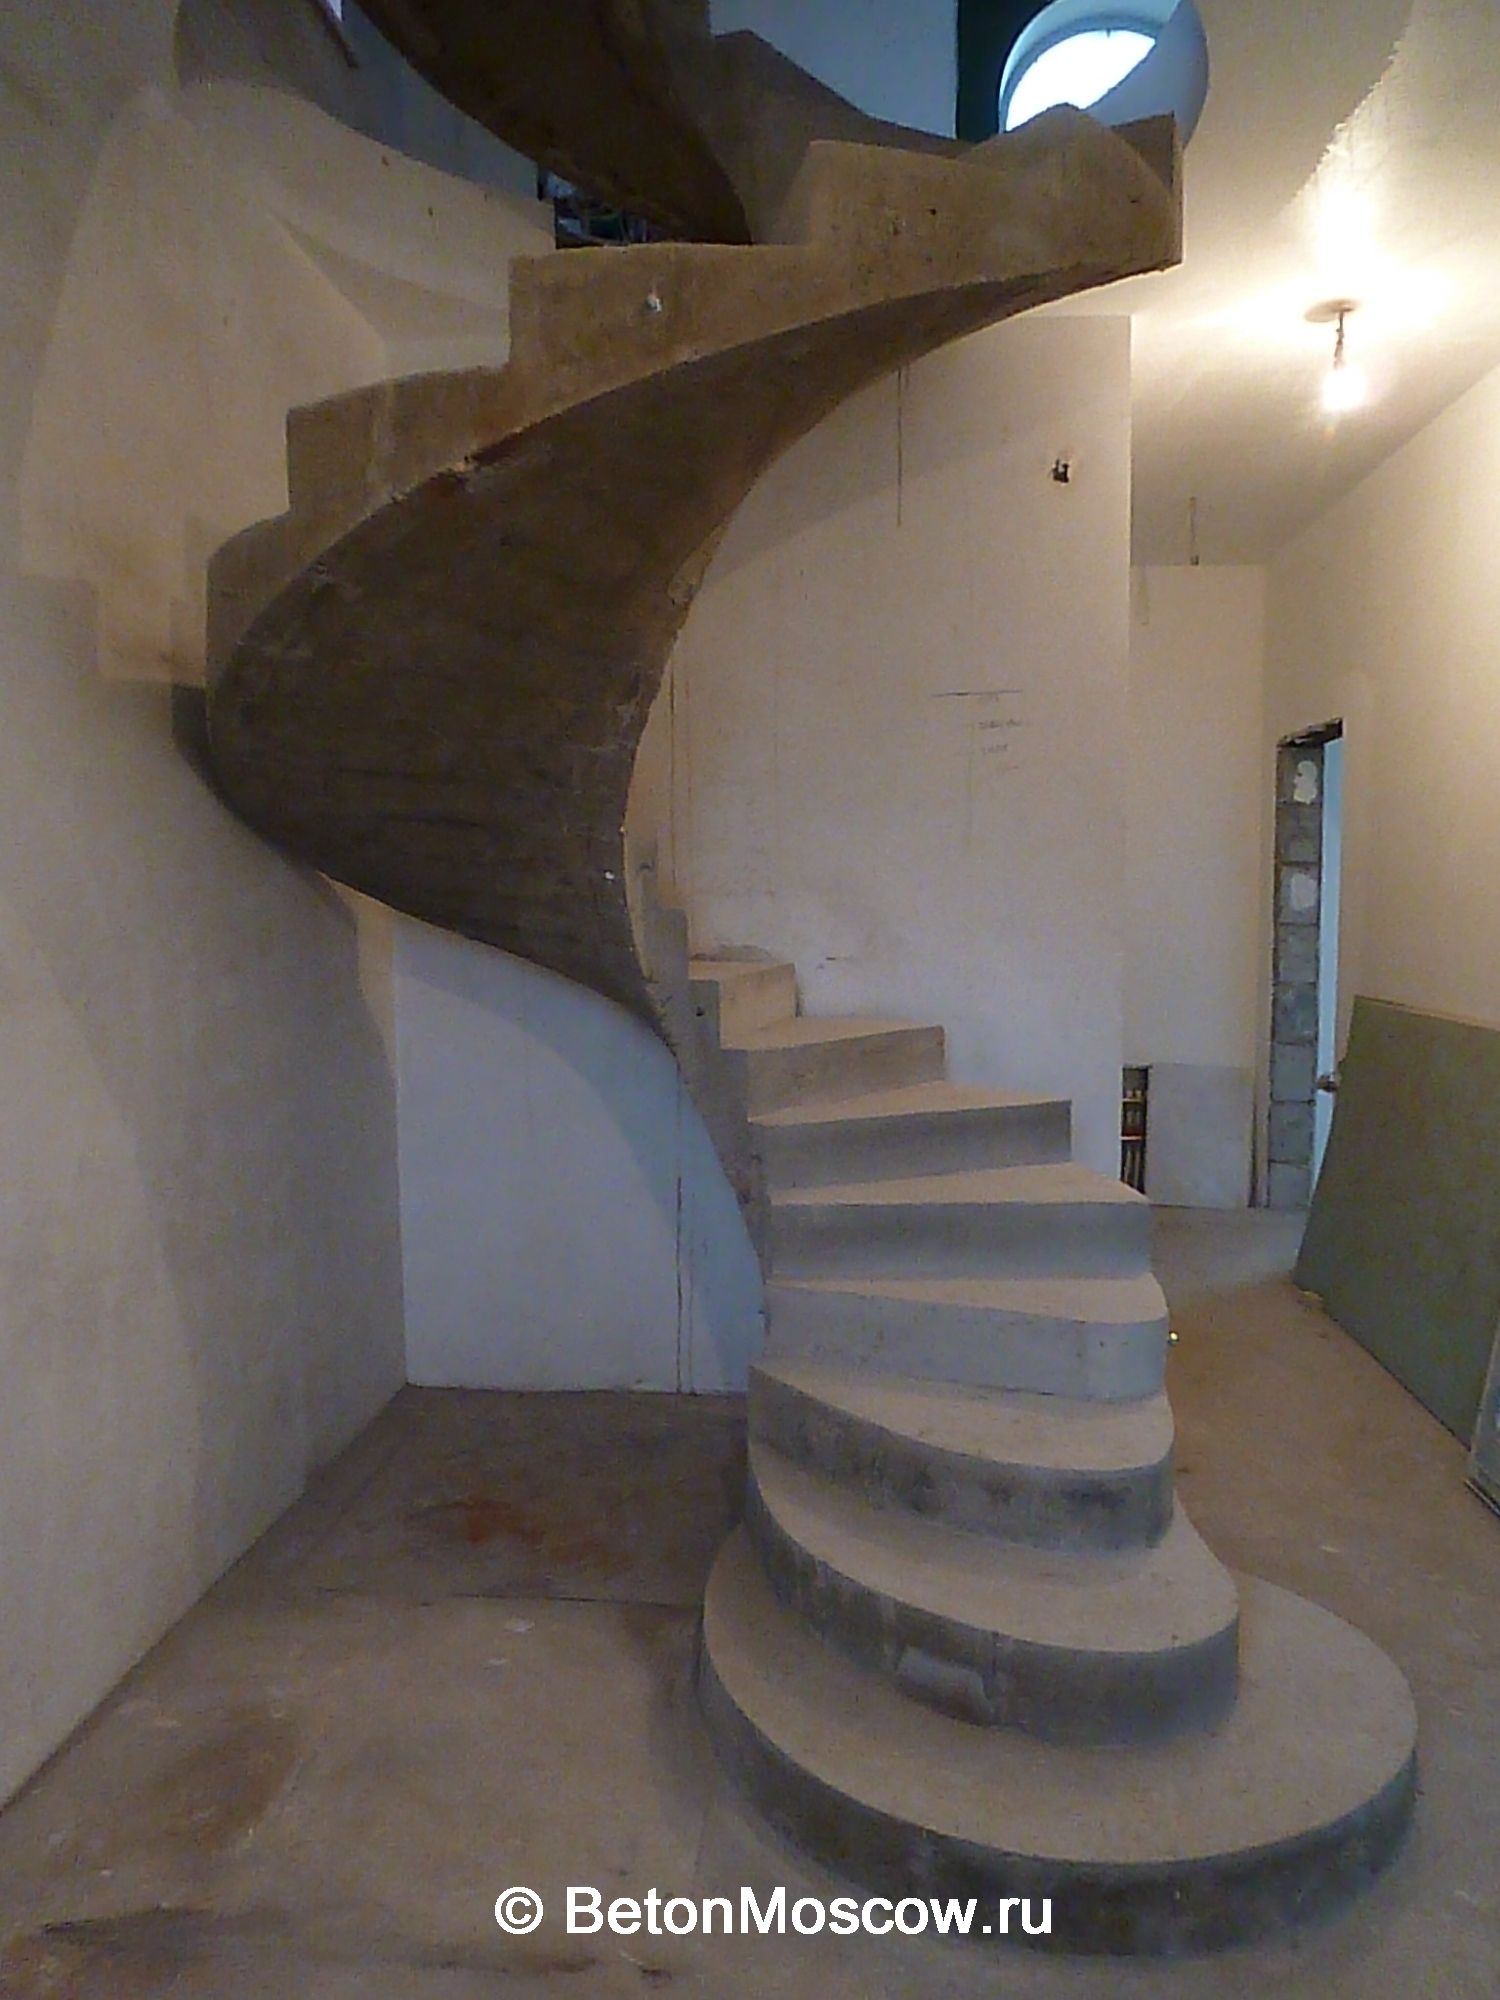 Бетонная лестница винтовая в коттеджном посёлке Троица. Фото 2